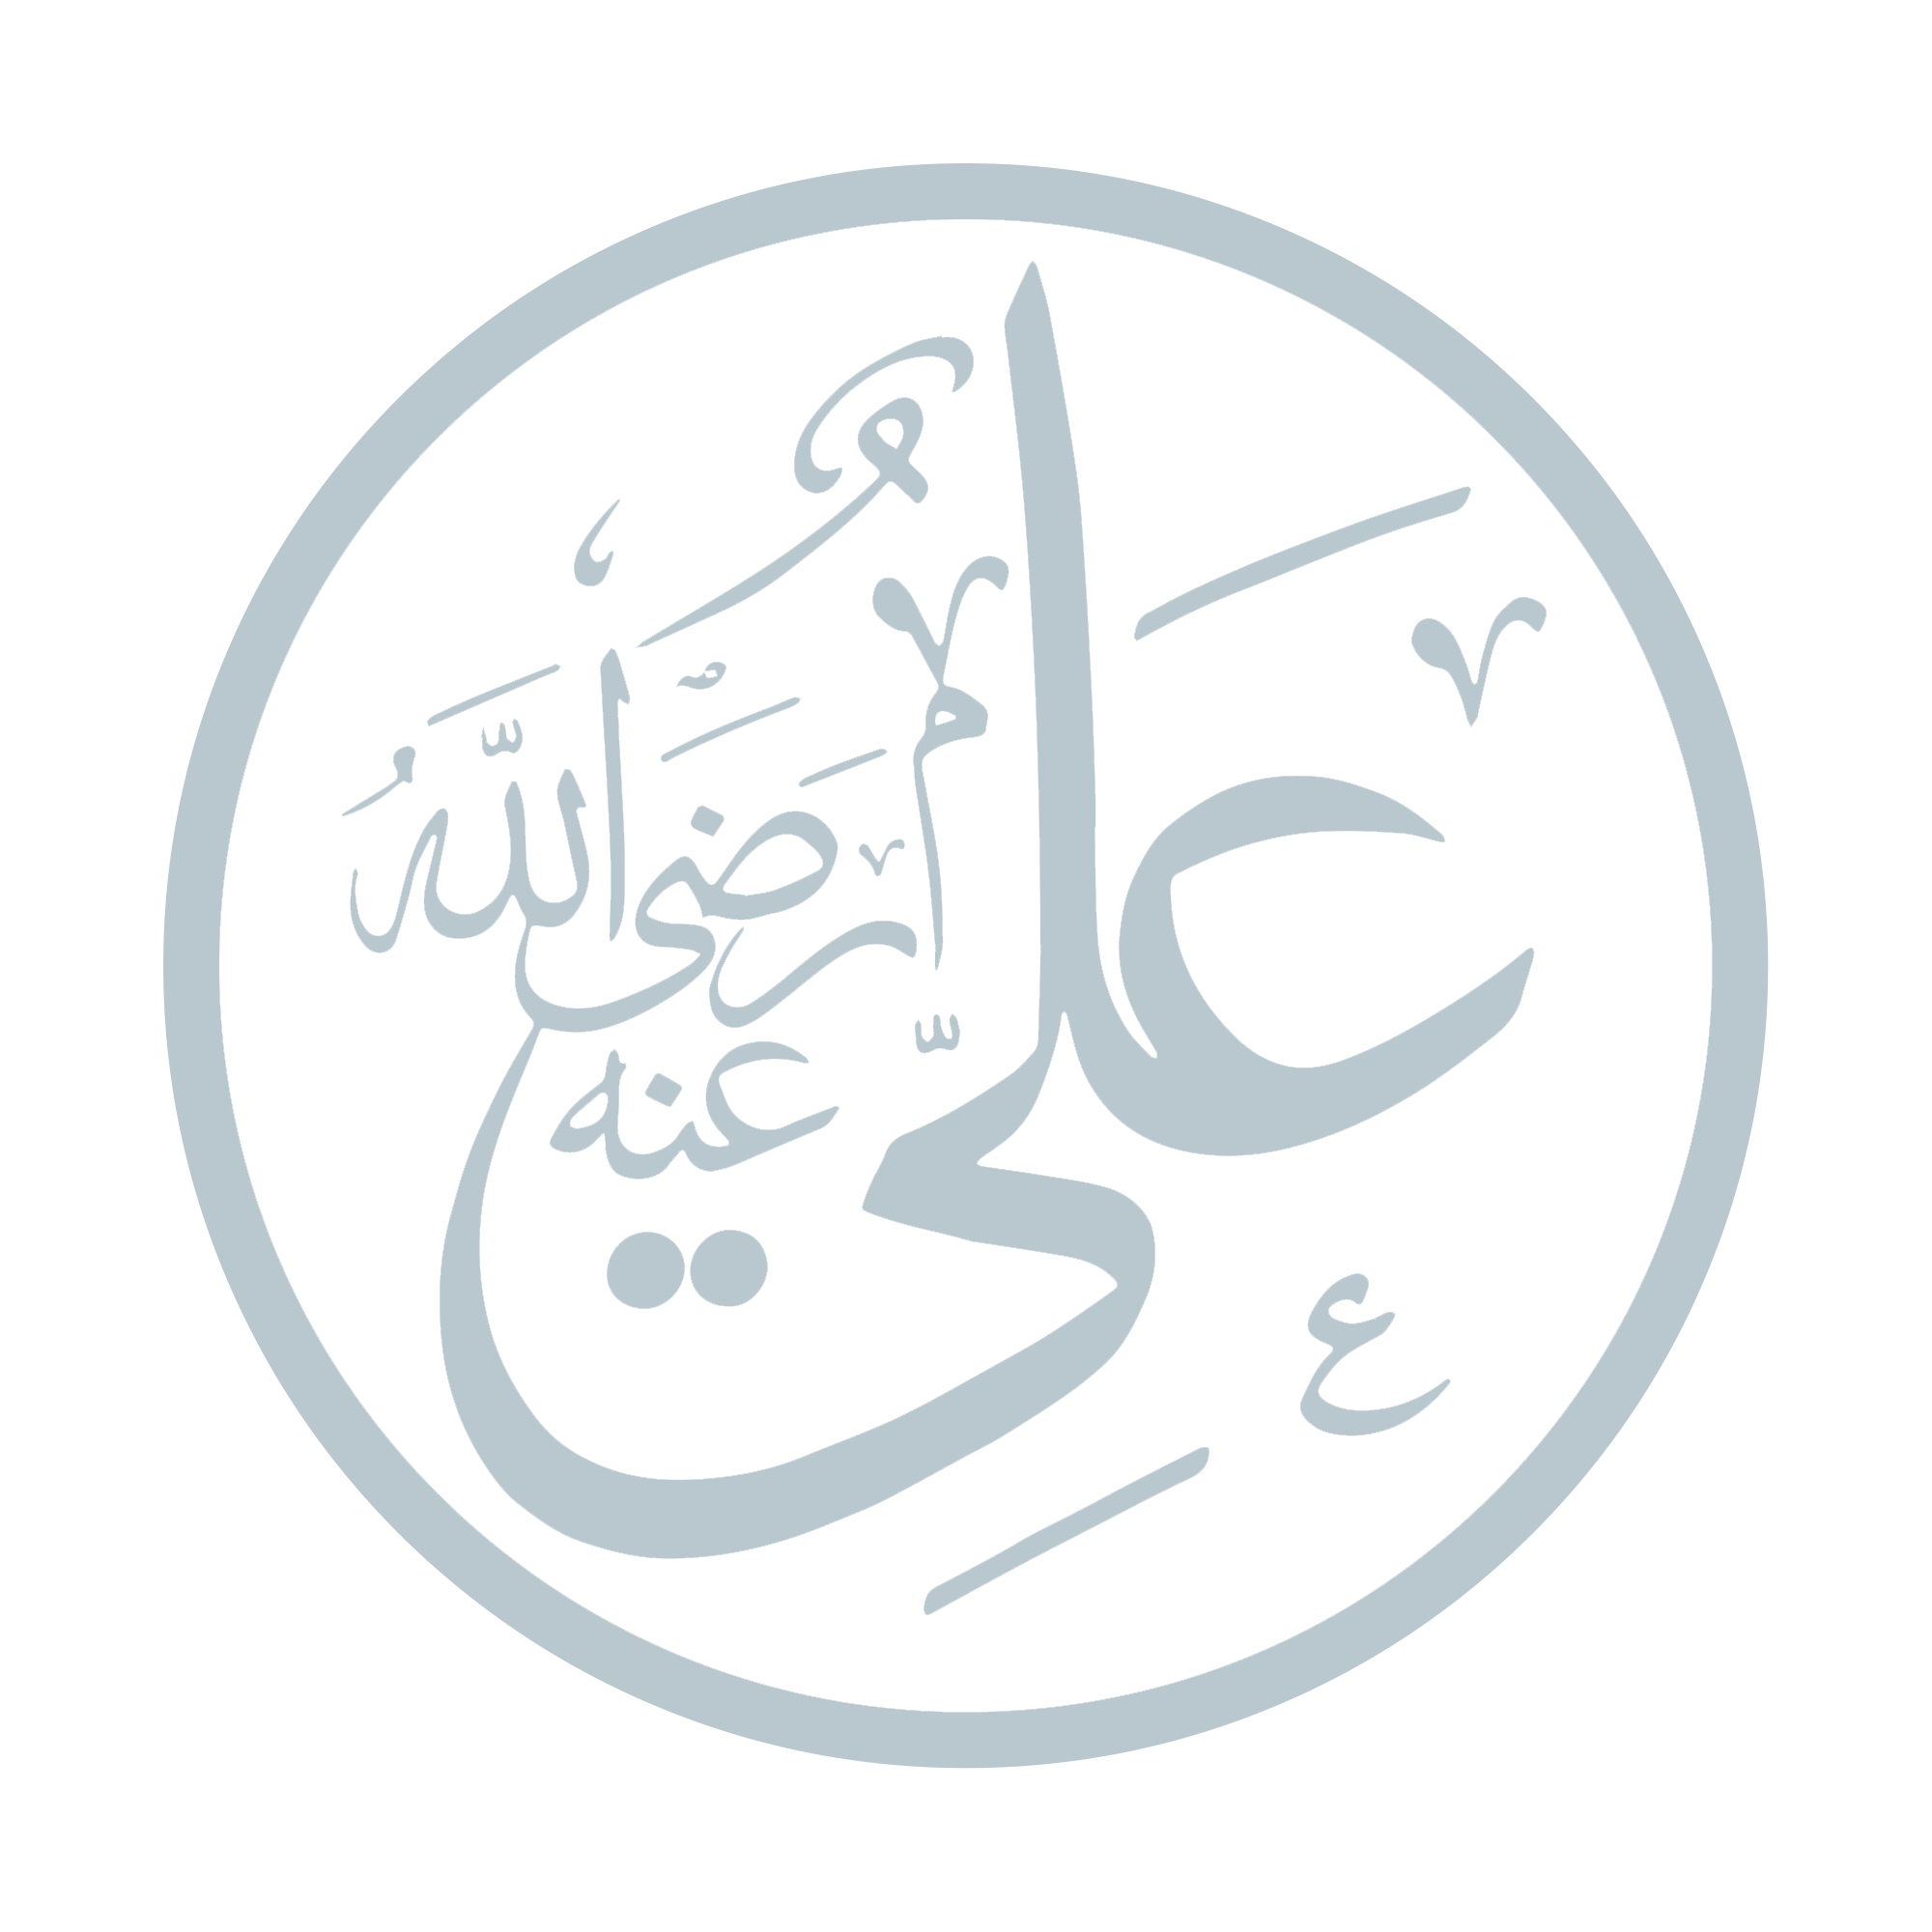 Hazrat Ali ibn Abi Talib (ra)